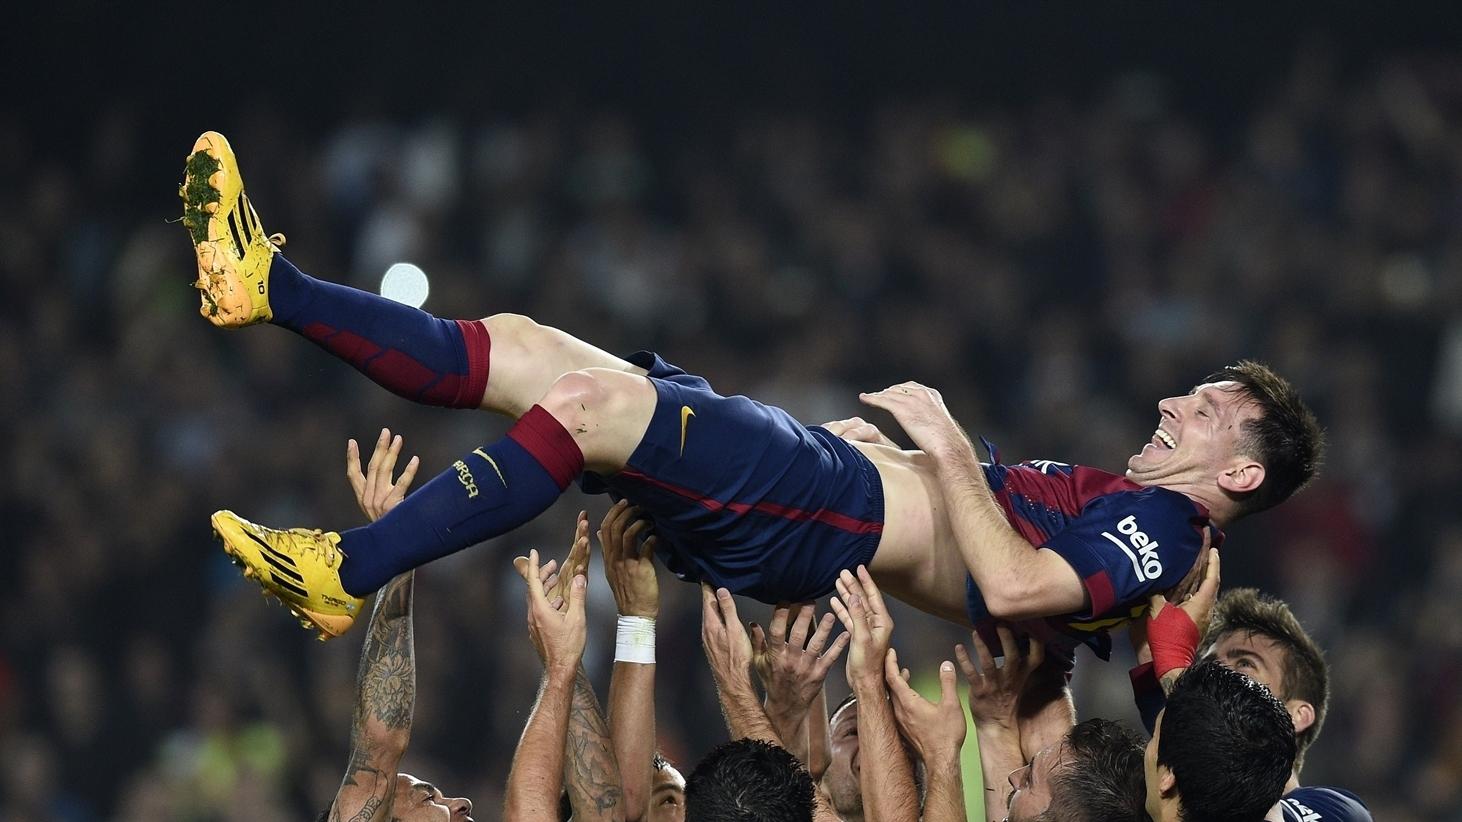 Barcelona's Messi breaks Zarra's Liga mark | UEFA.com